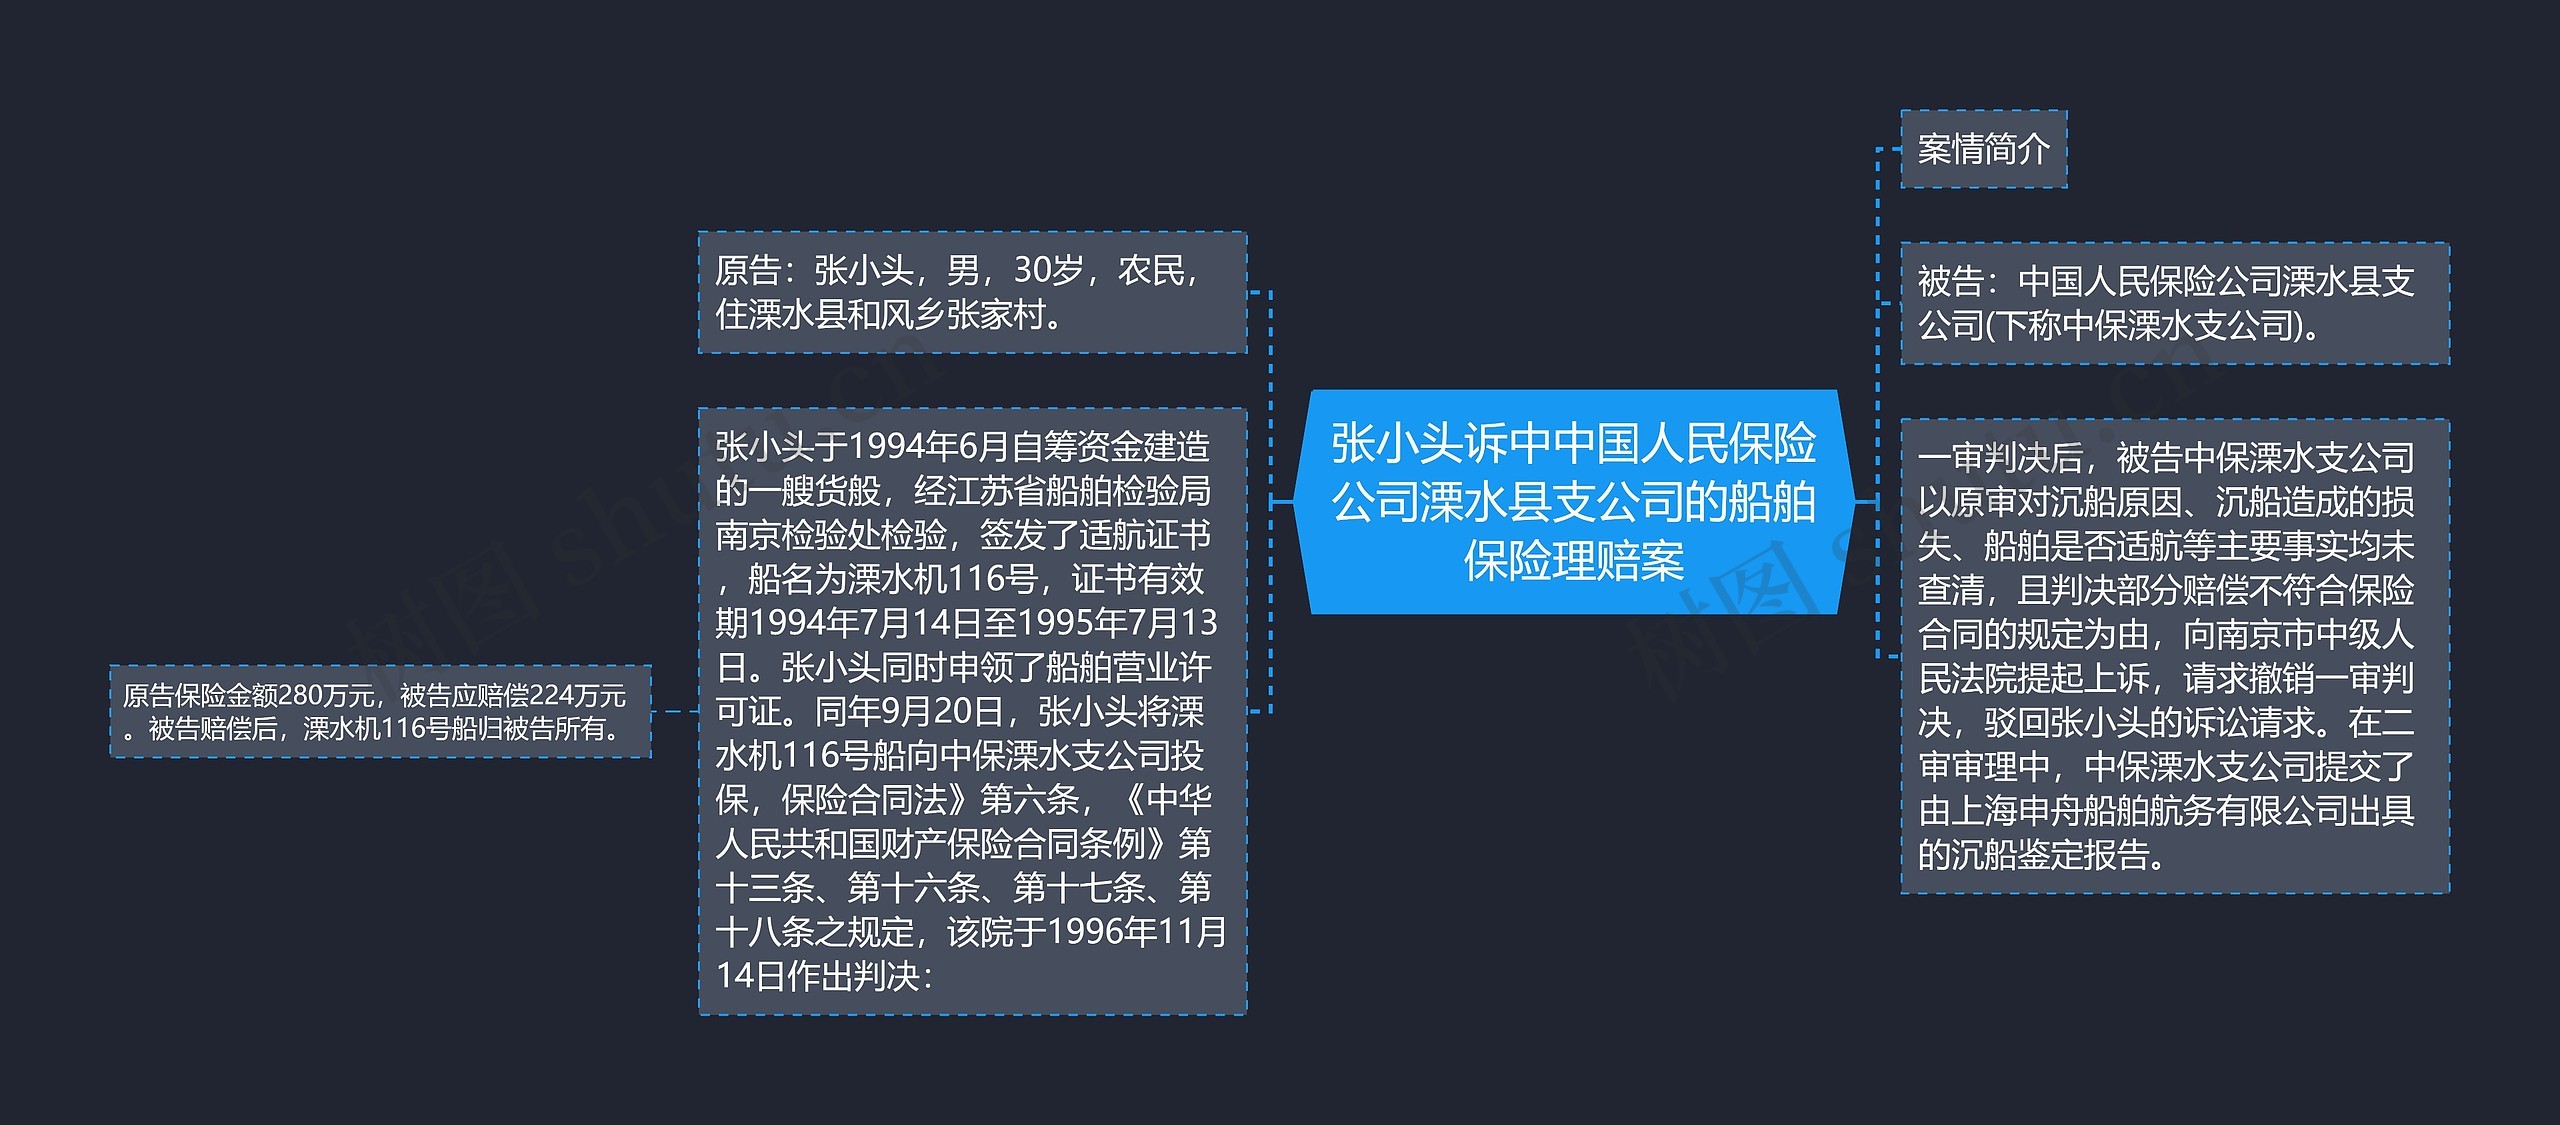 张小头诉中中国人民保险公司溧水县支公司的船舶保险理赔案